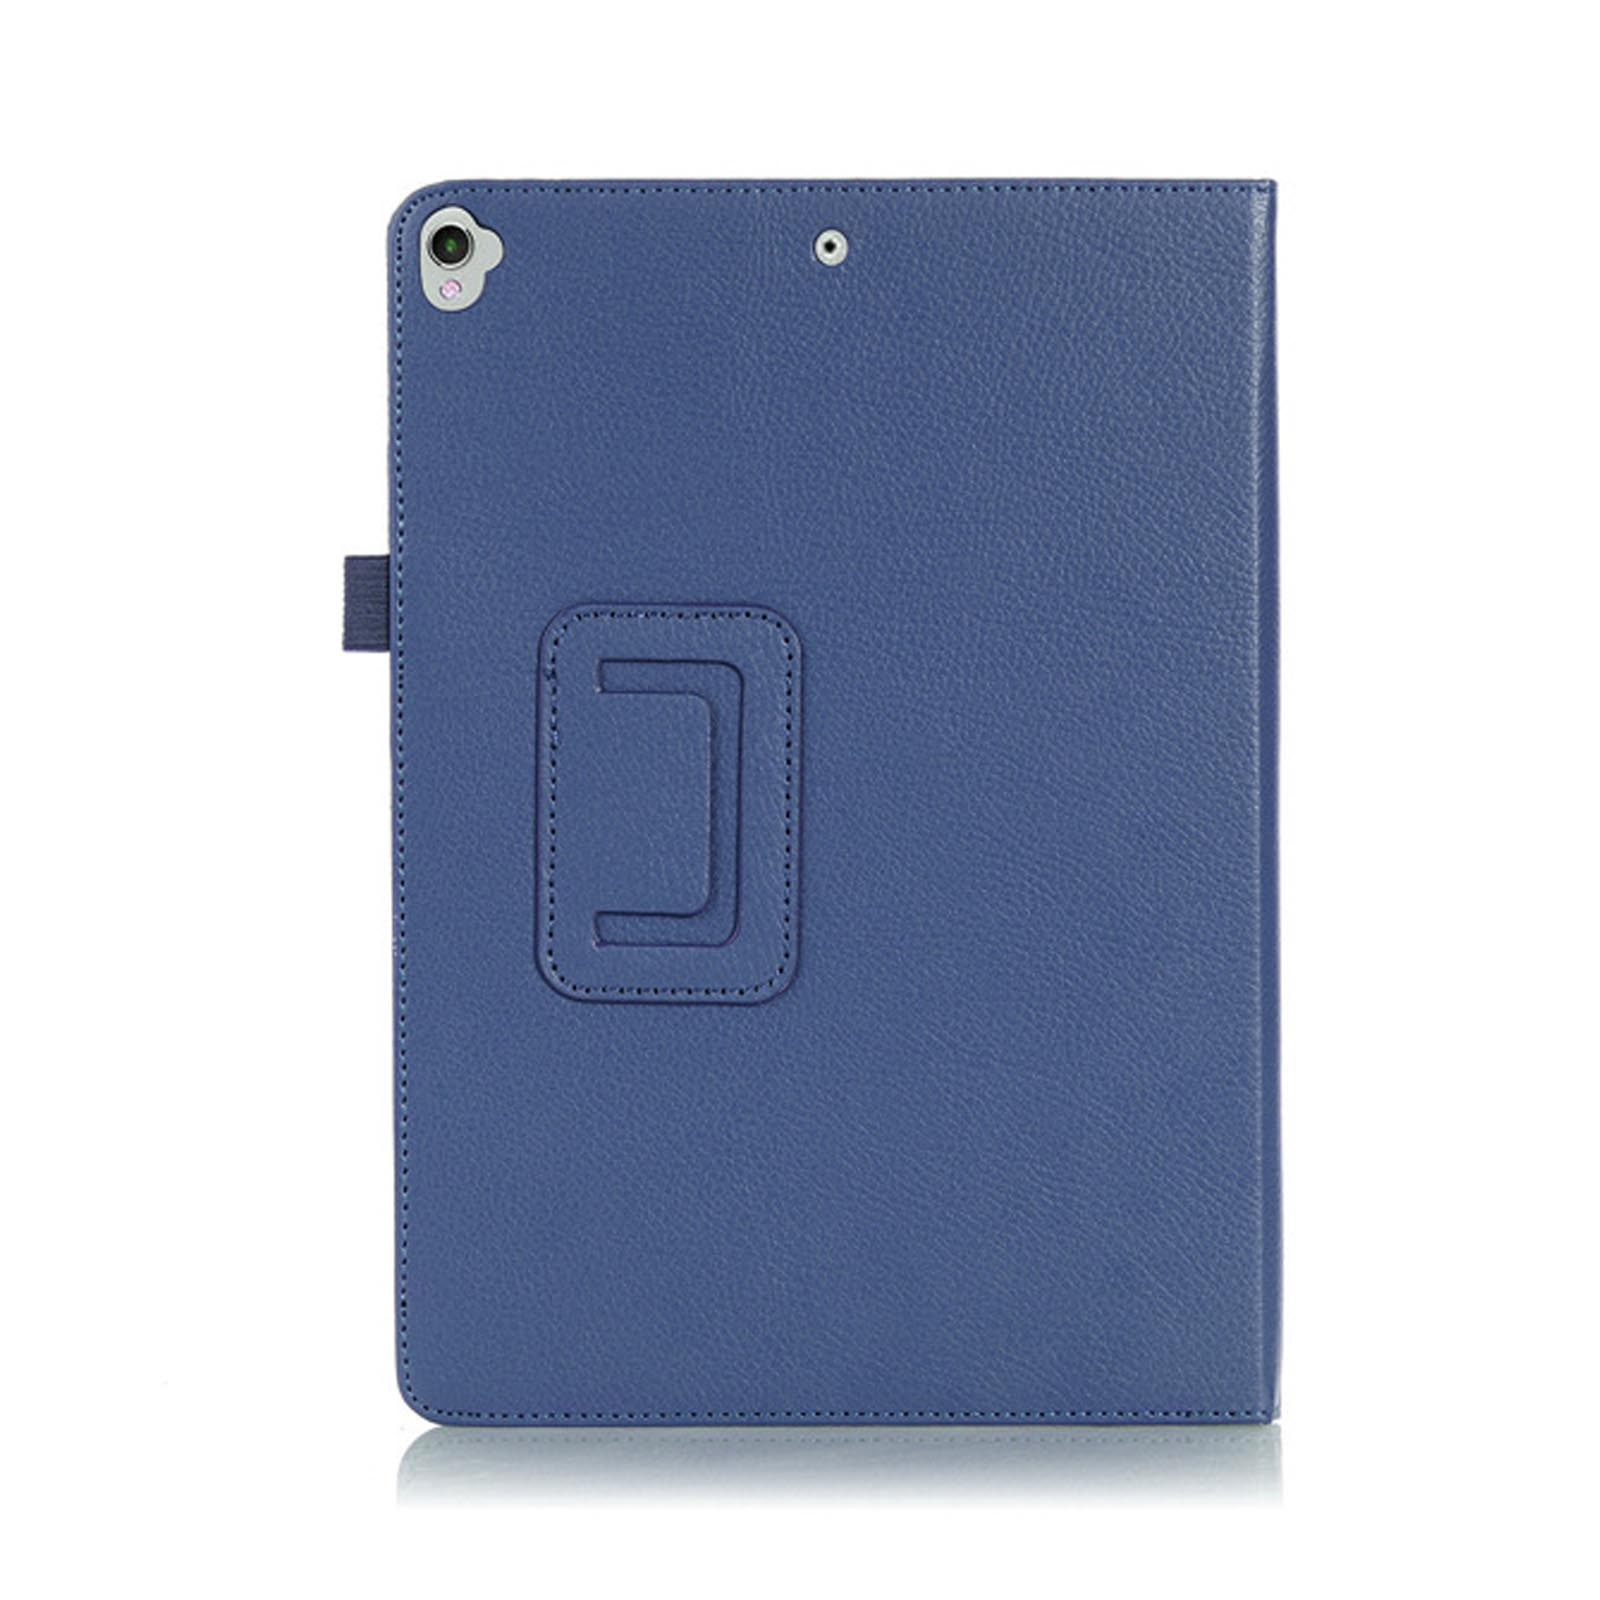 Blau Bookcover Hülle 10.2 2019/2020/2021 Schutzhülle Kunstleder, für iPad Apple LOBWERK Zoll